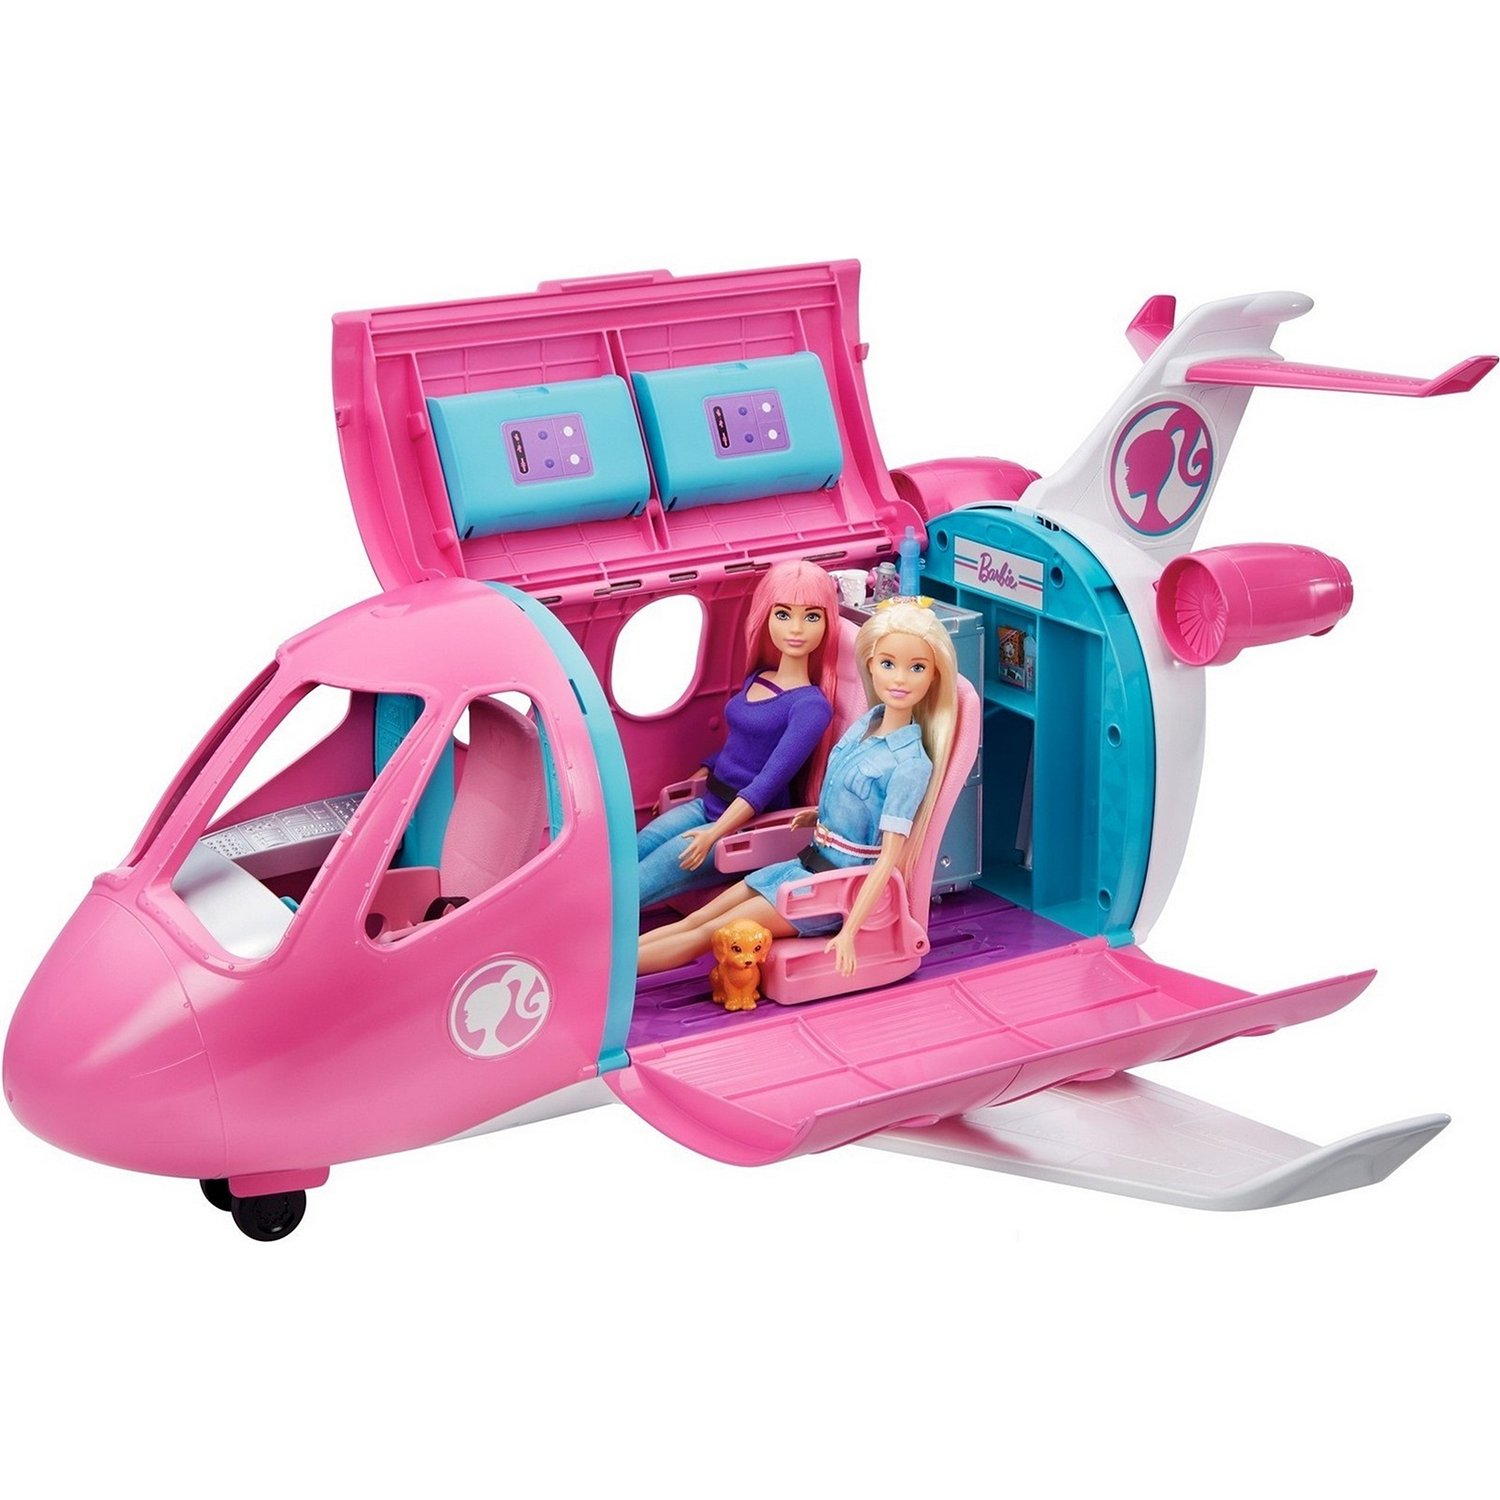 Barbie Самолет мечты (GDG76)